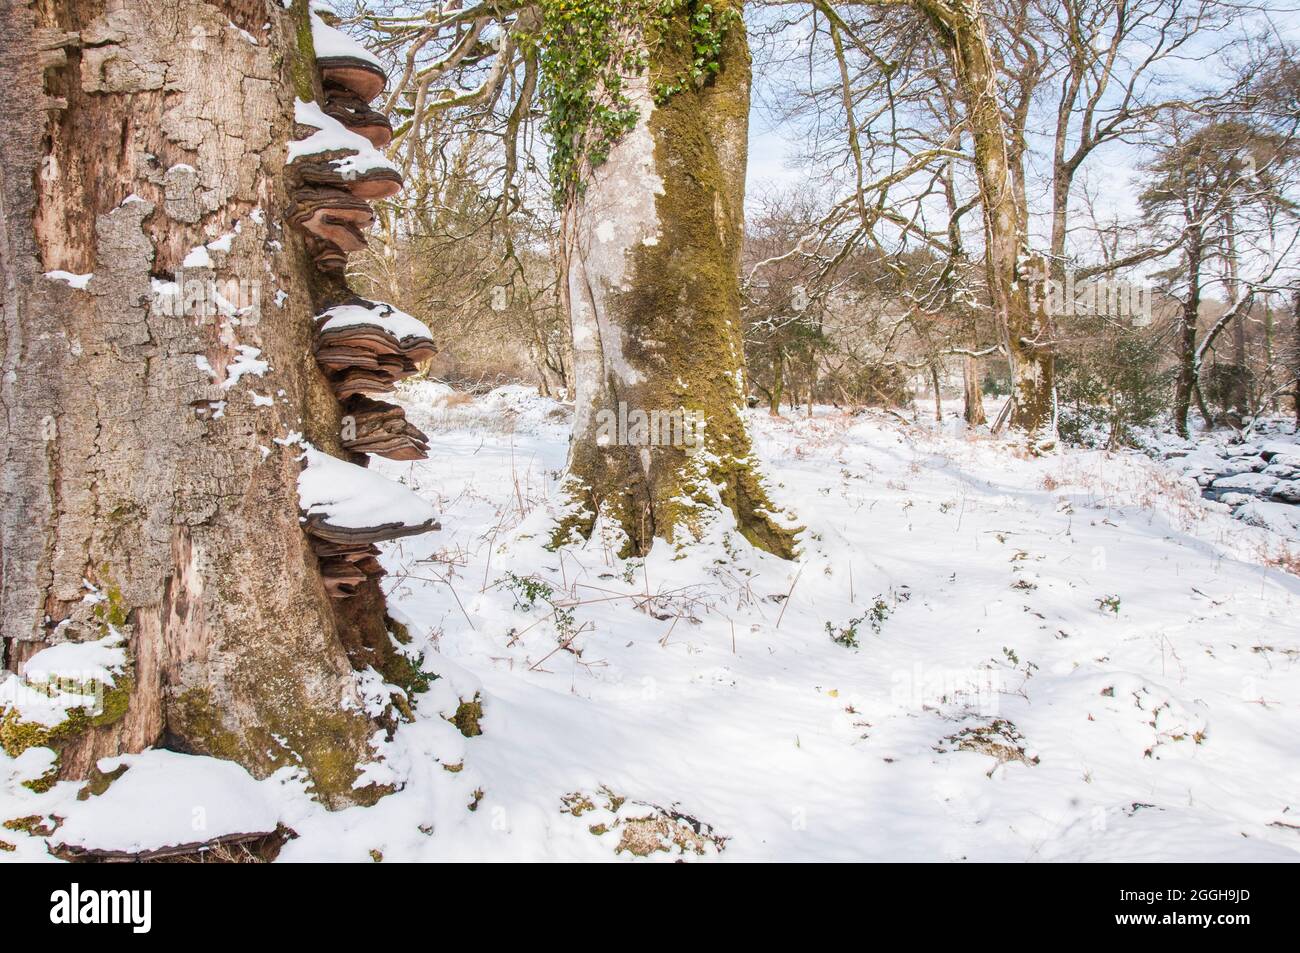 bracket fungi growing on beech trees in winter, West Devon Stock Photo